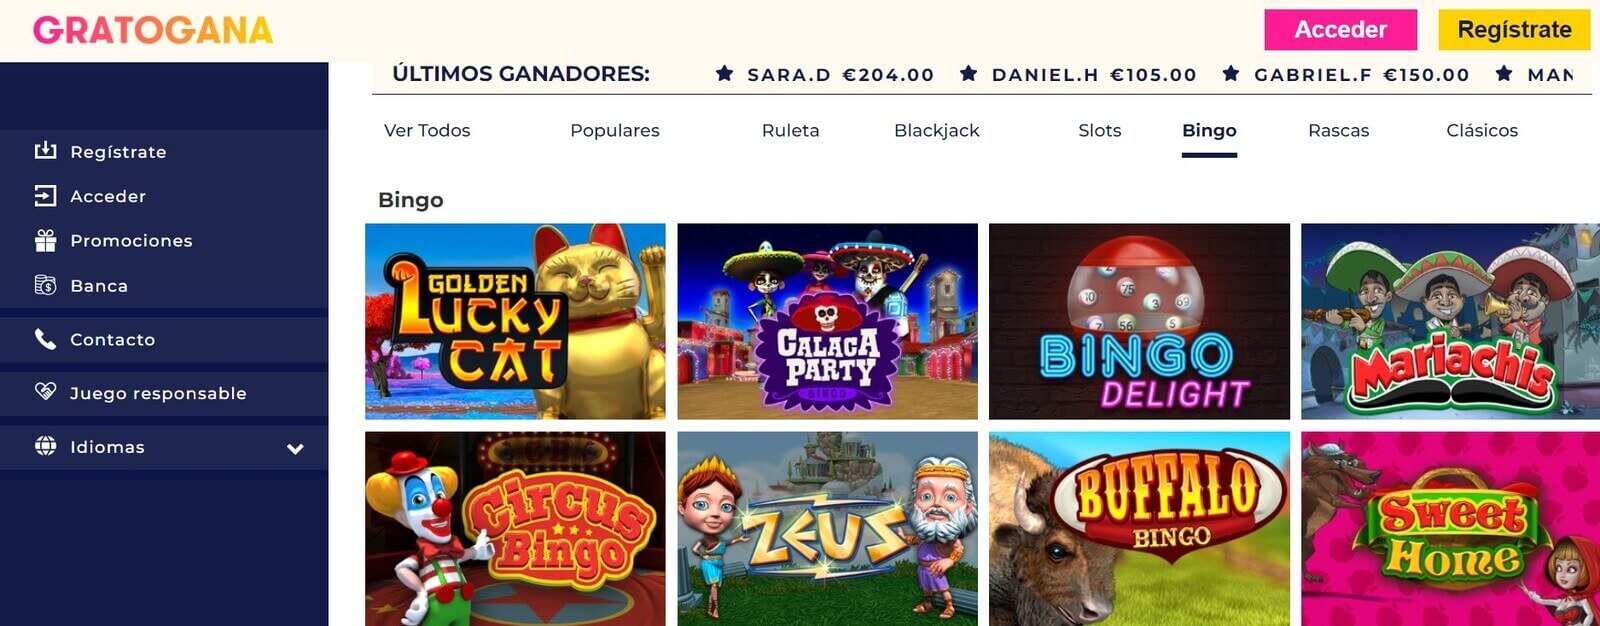 Juegos de bingo en Gratogana Casino online de España